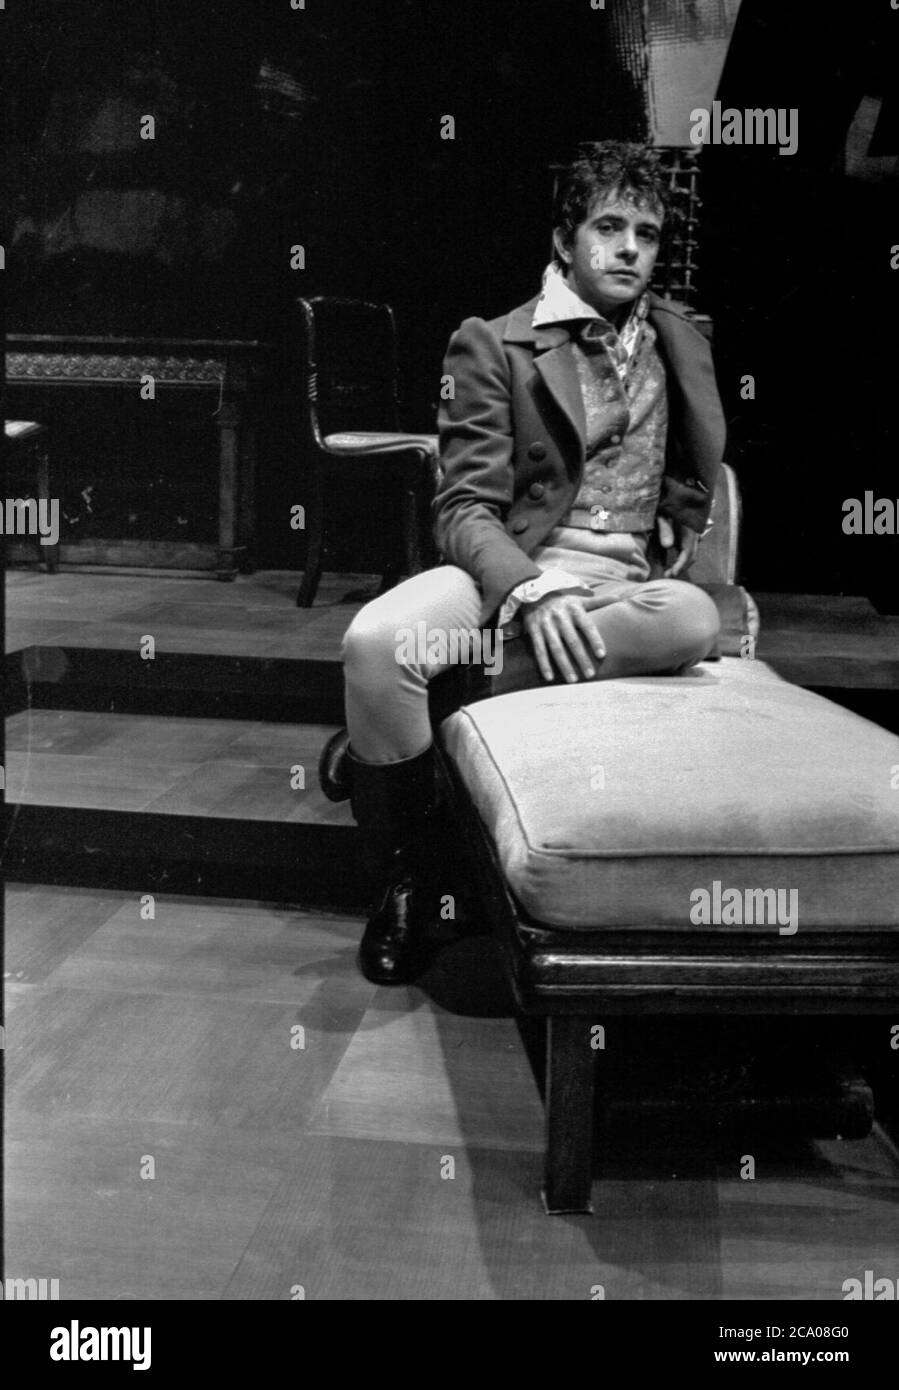 Sänger, Songwriter, Schauspieler und Popstar David Essex auf der Bühne des Young Vic in London, als er 1981 in Childe Byron von Romulus Linney auftrat Stockfoto